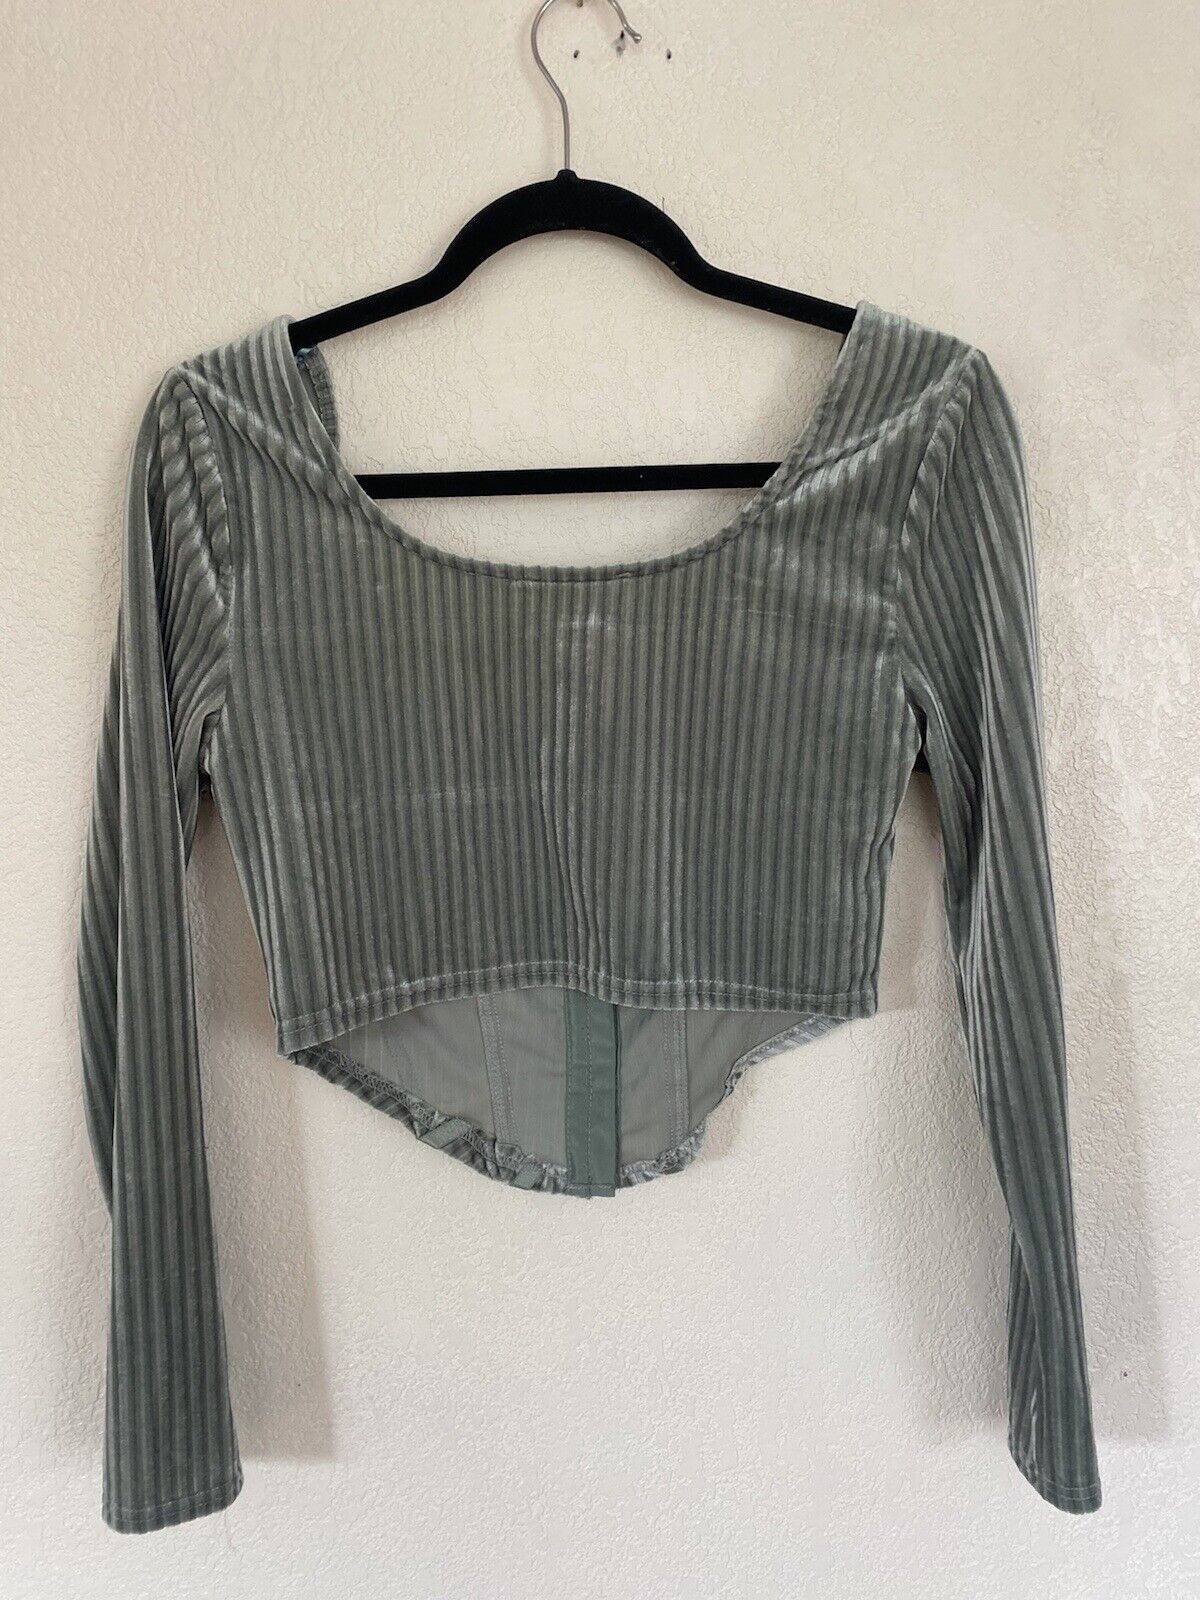 Silver Velvet Long Sleeve Shirt - Unbranded - Women’s Medium # 2640